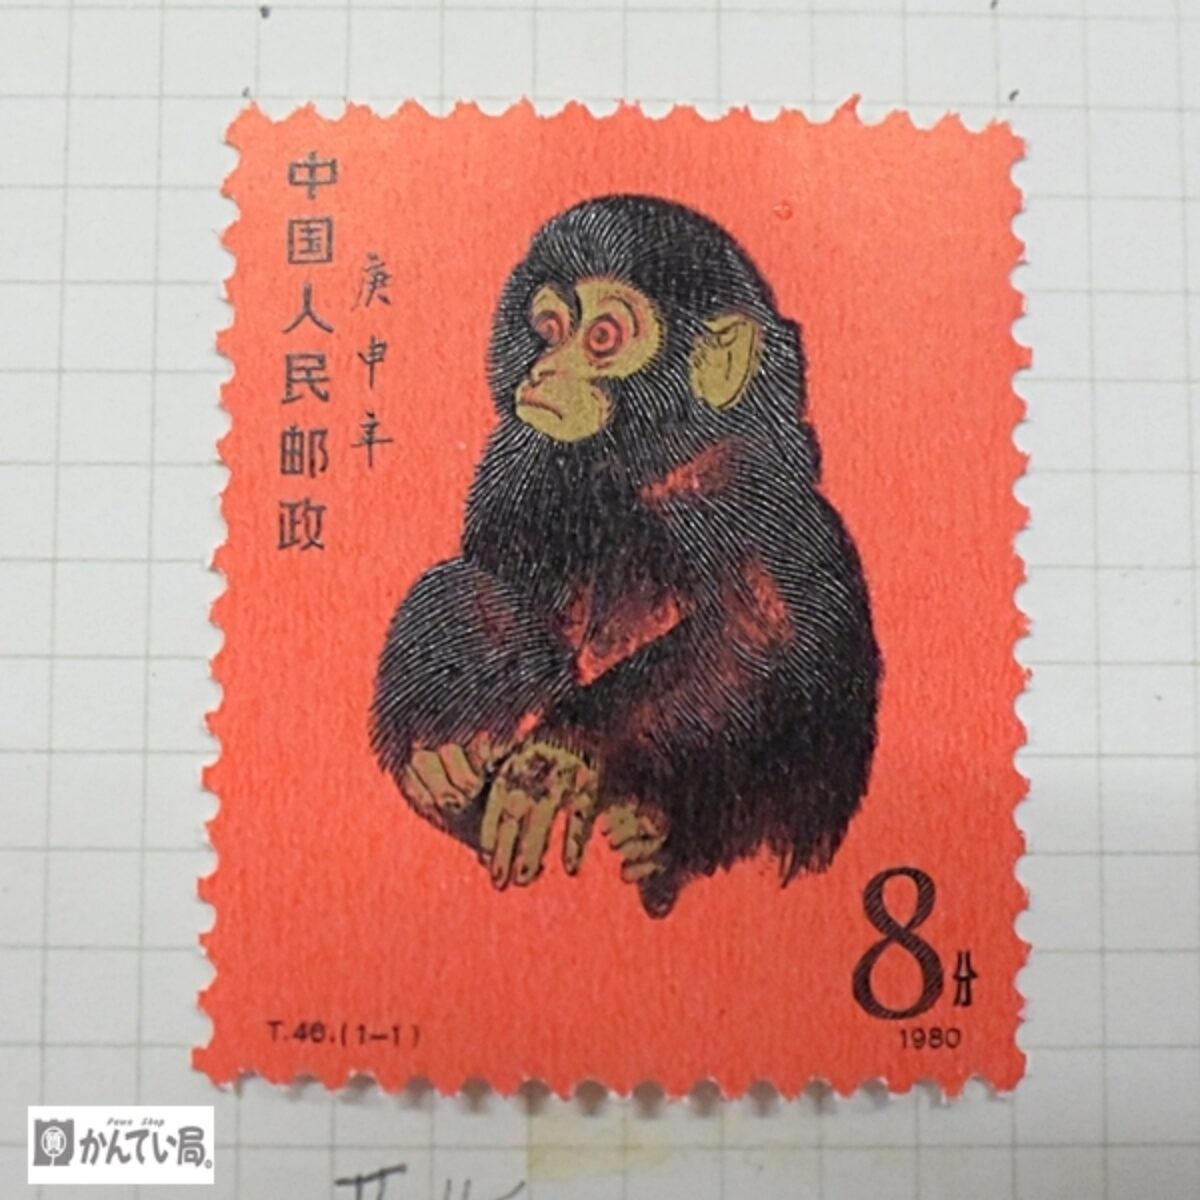 コレクター品 未使用 赤猿 1980年 T46 8元 含む 海外切手アルバム 